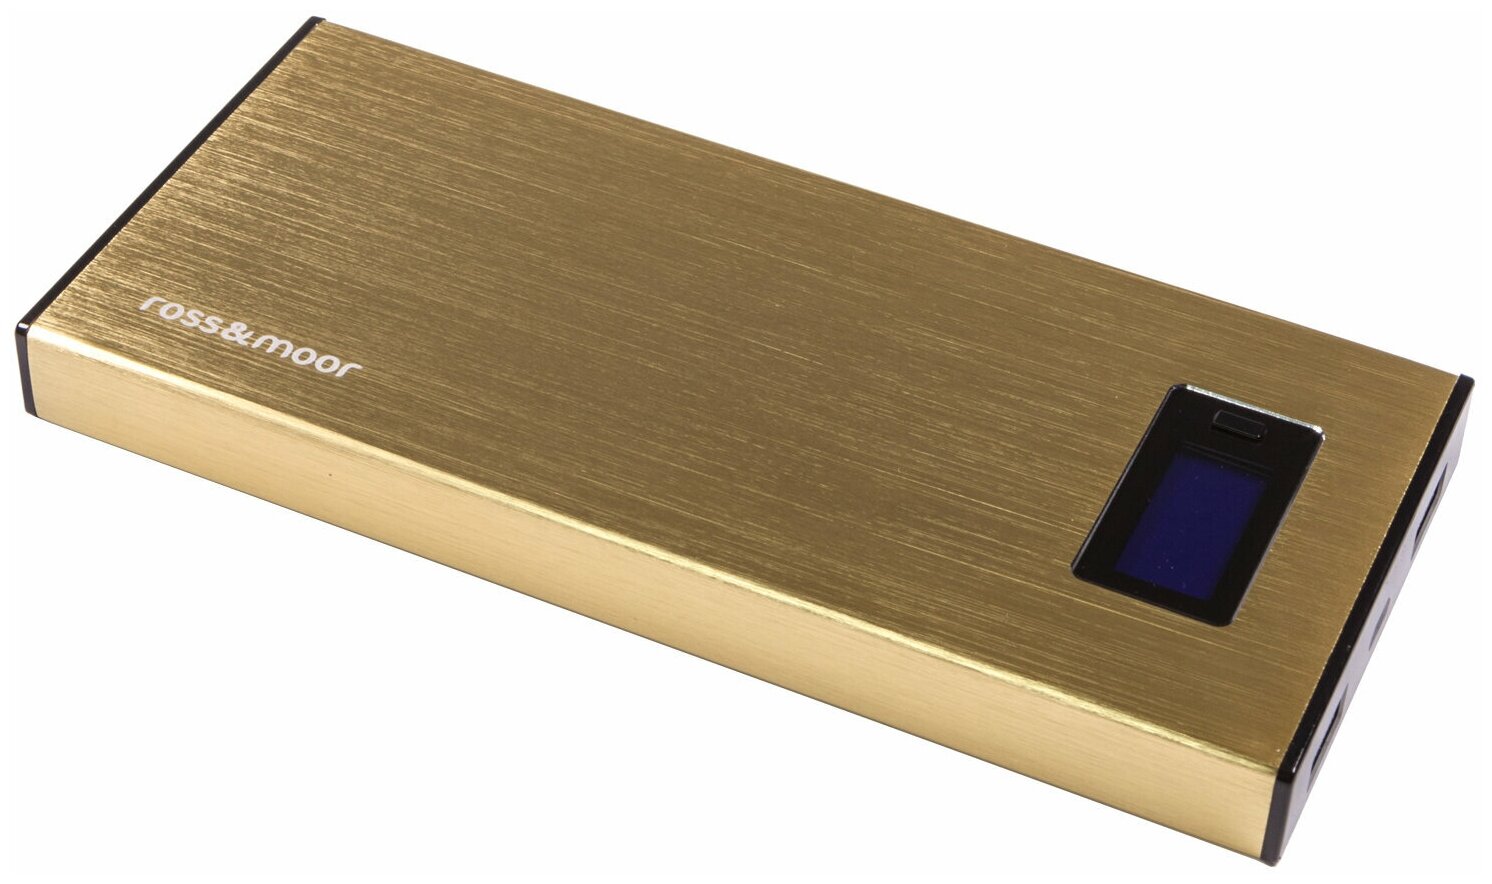 Универсальный внешний аккумулятор Ross&Moor PB-MS010 12000 мАч золотистый Металлический корпус USB 5В/2.1А+USB 5В/1A